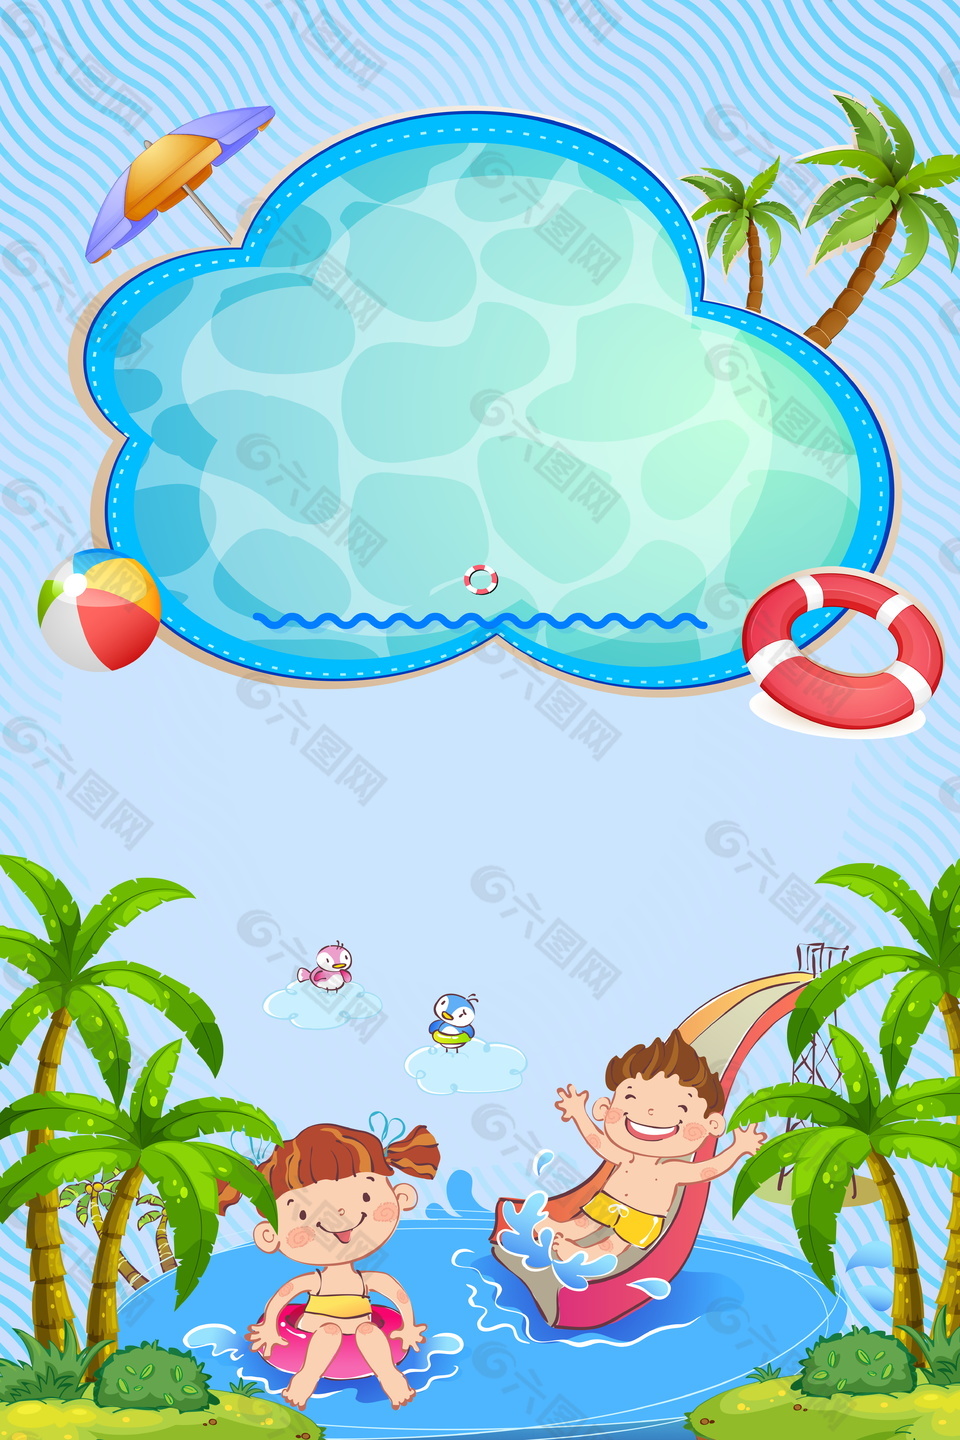 卡通孩子滑滑梯水上乐园背景素材